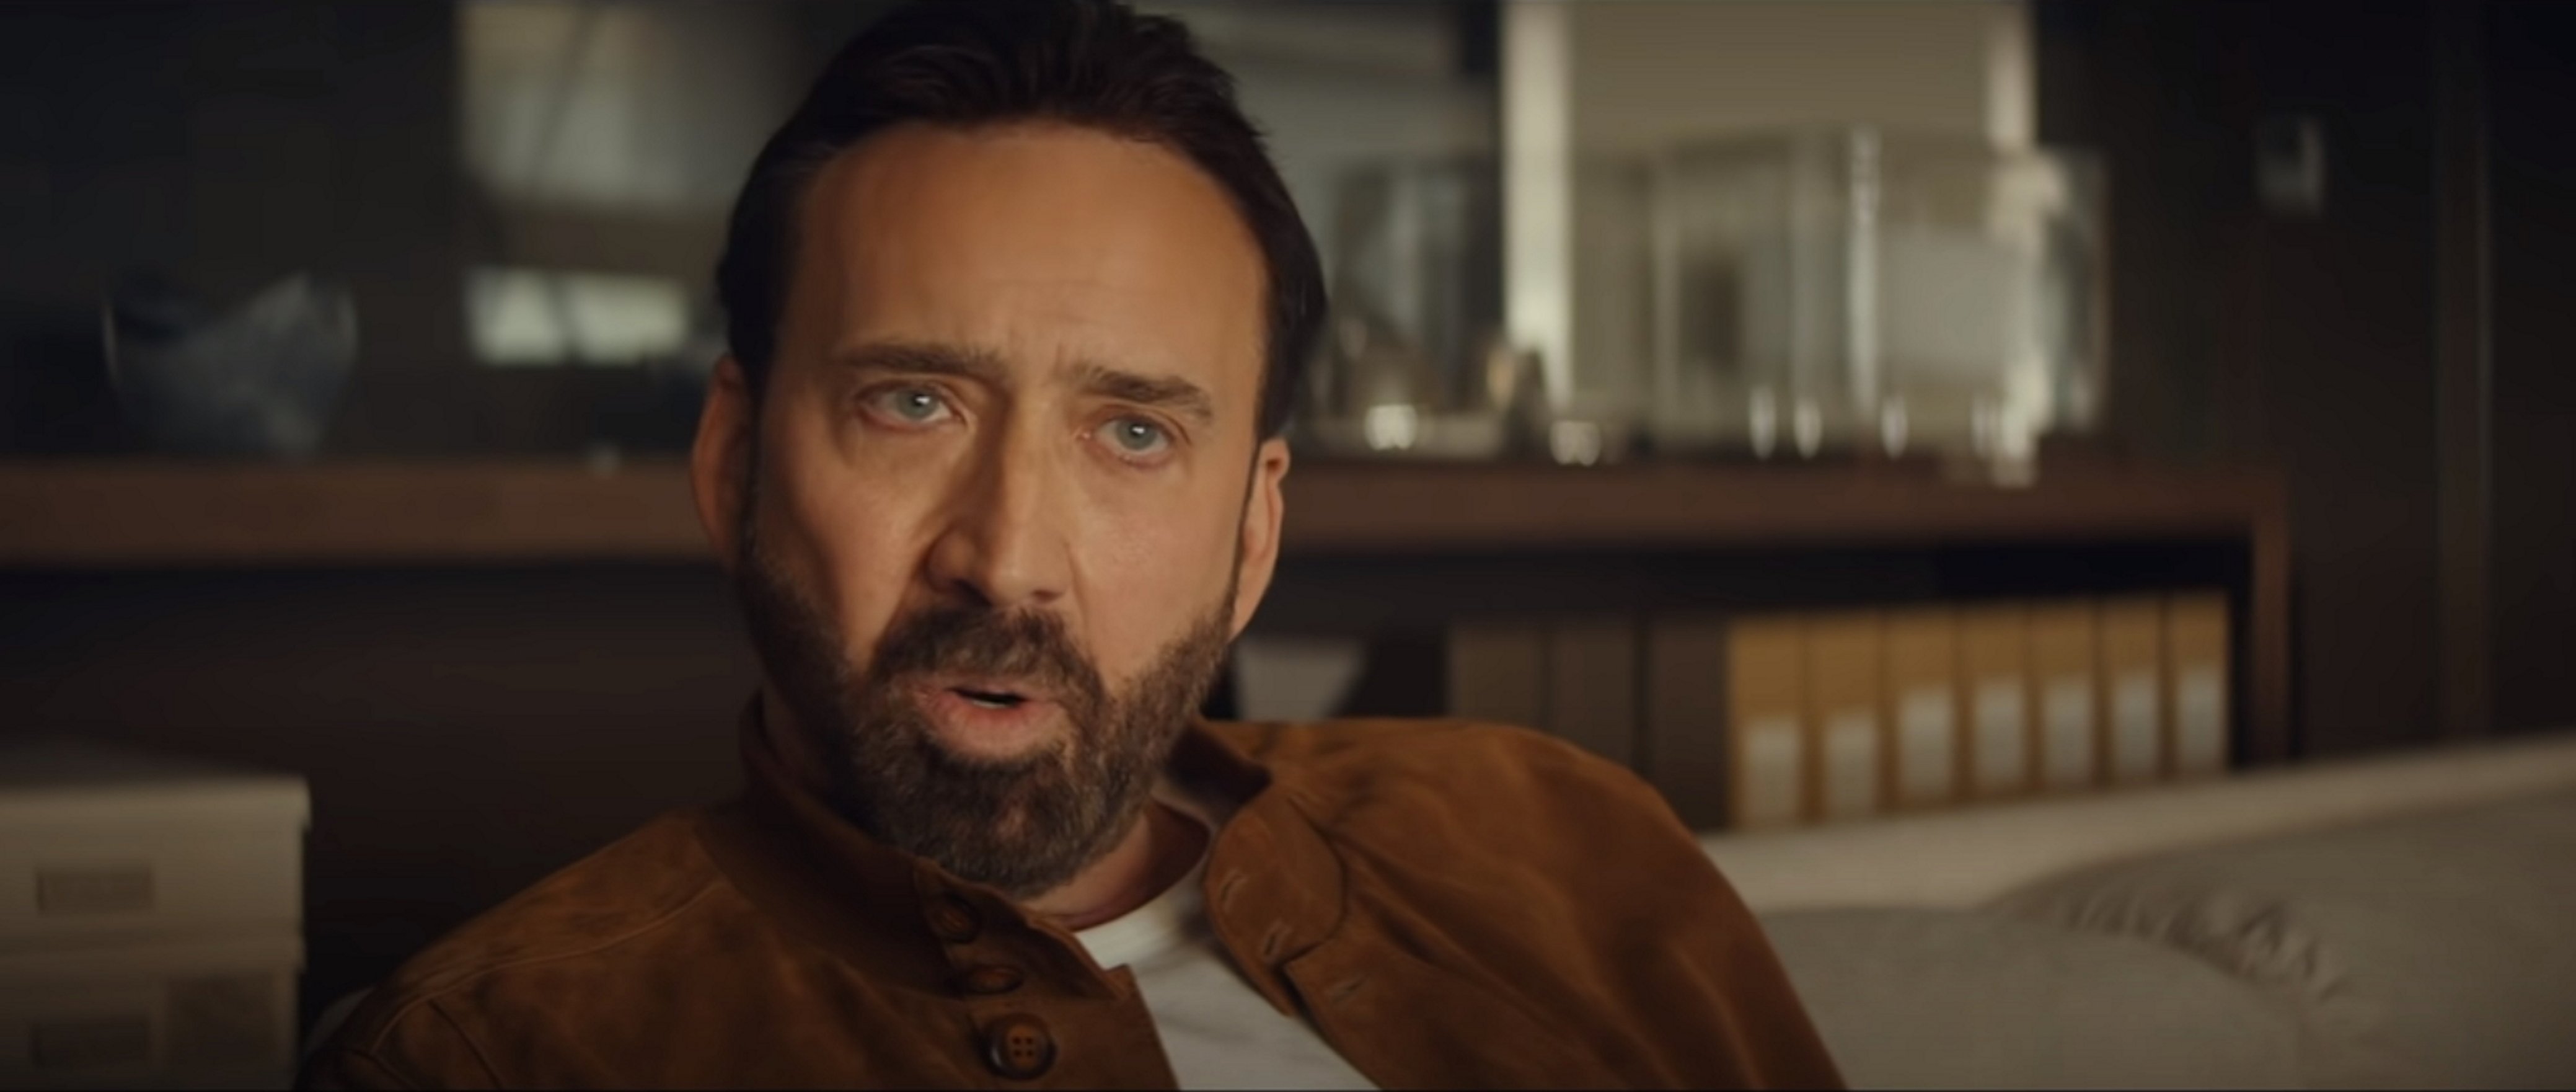 Esto hace España con la última película de Nicolas Cage por hablar de Catalunya